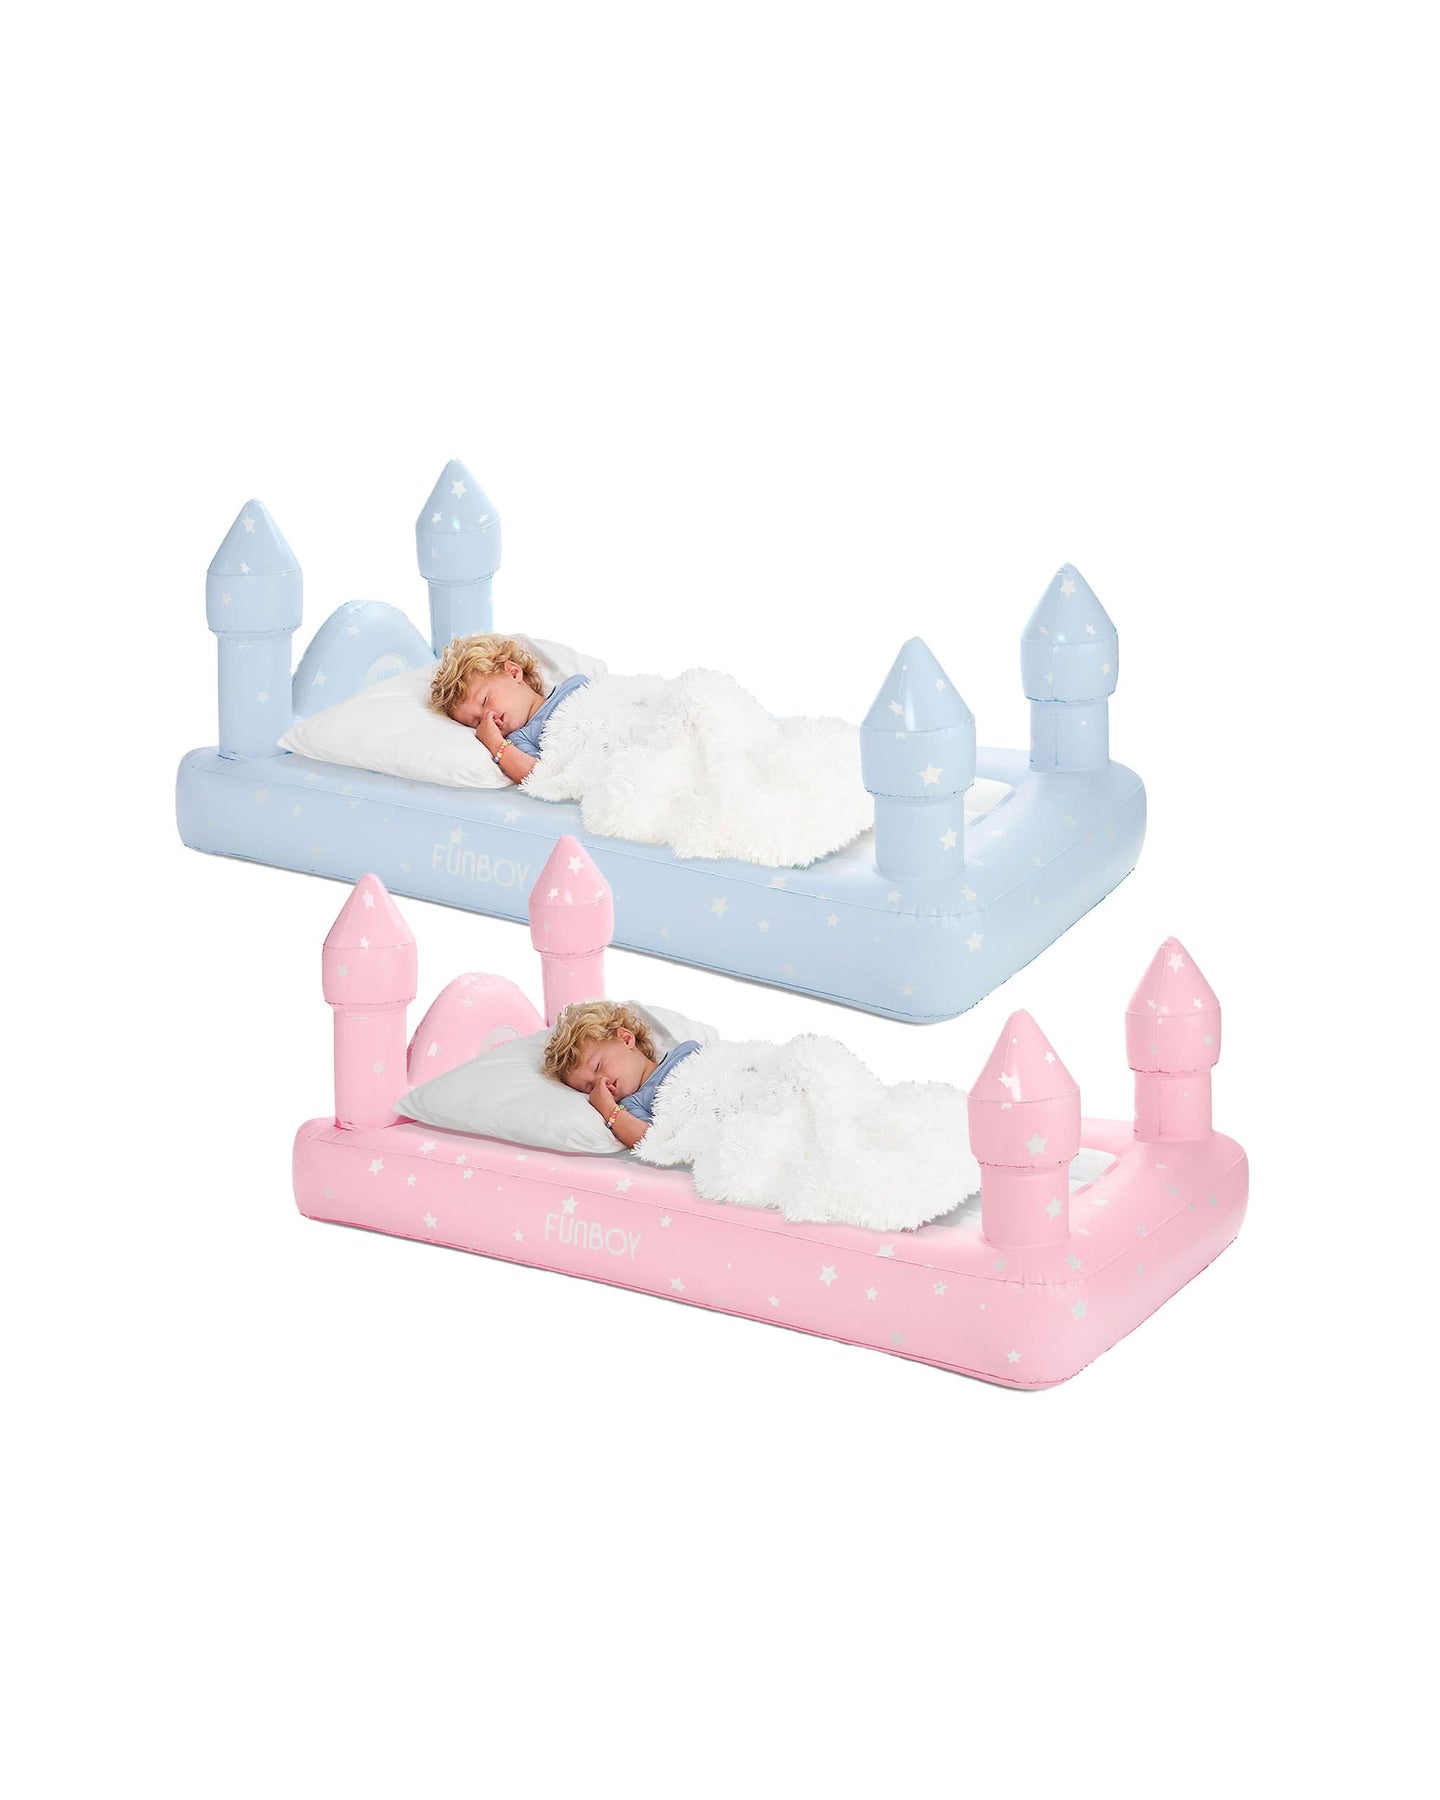 Pink & Blue Castle Sleepover Kids Air Mattress - 2 Pack